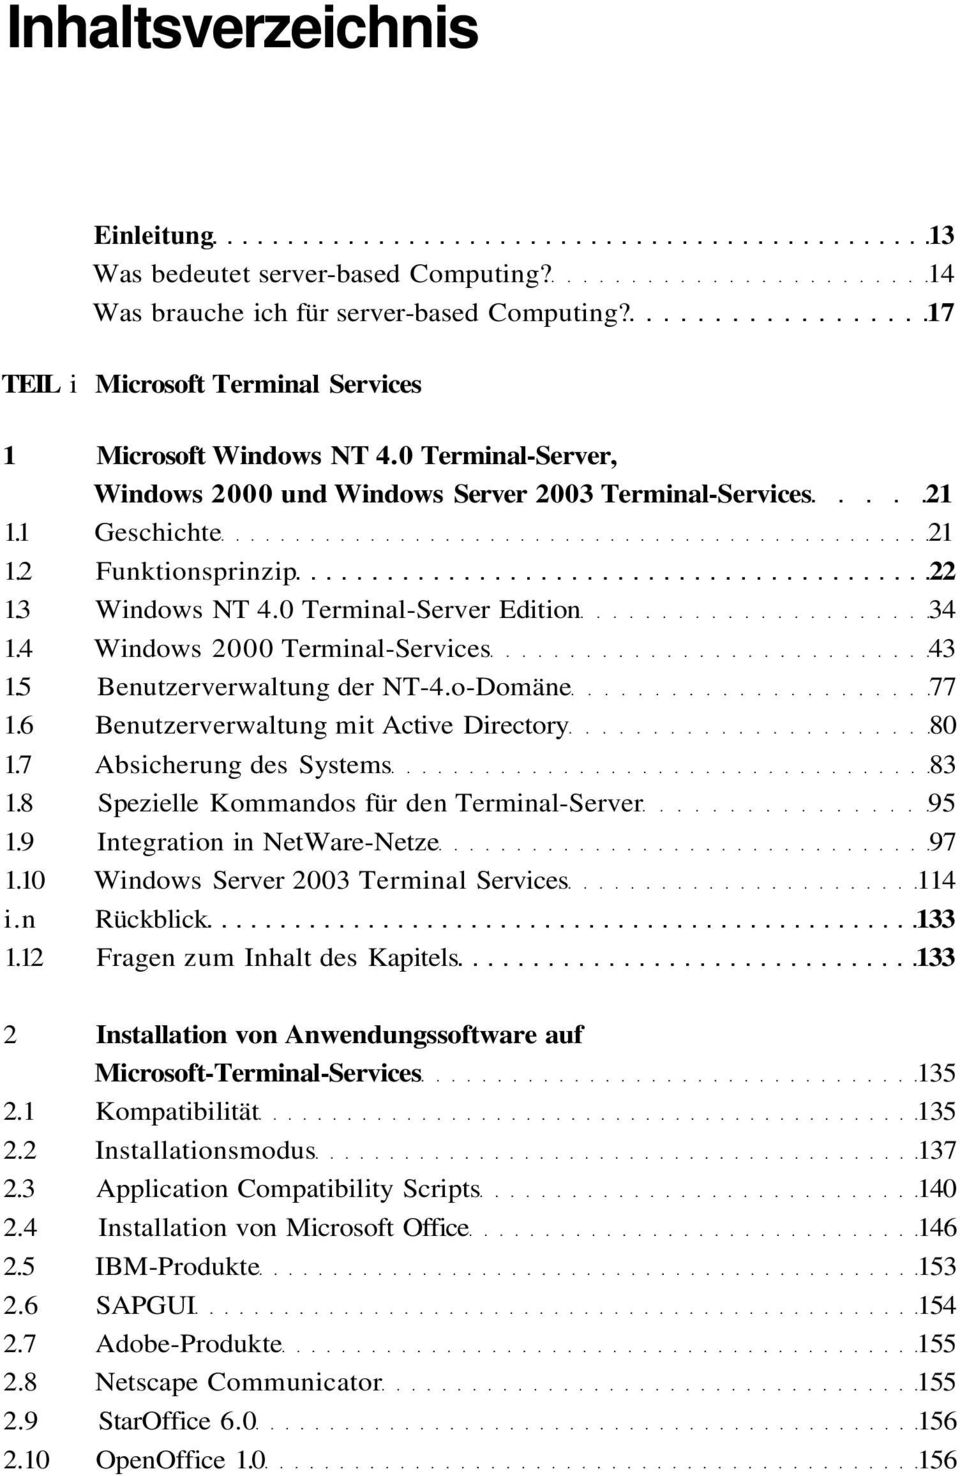 4 Windows 2000 Terminal-Services 43 1.5 Benutzerverwaltung der NT-4.o-Domäne 77 1.6 Benutzerverwaltung mit Active Directory 80 1.7 Absicherung des Systems 83 1.